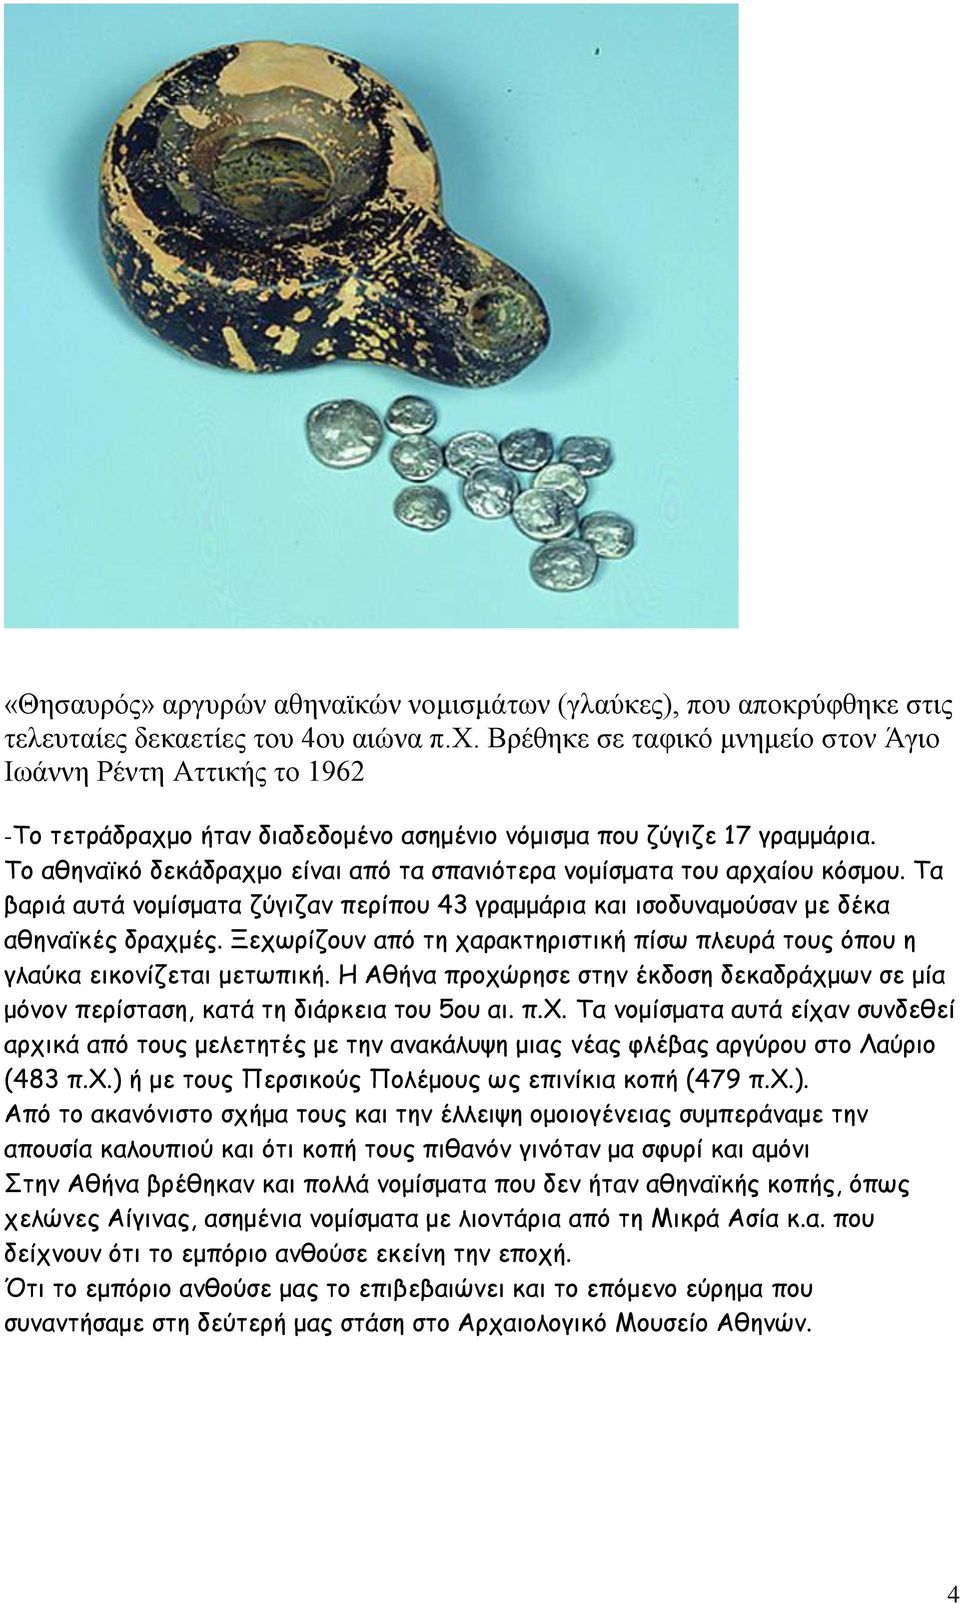 Το αθηναϊκό δεκάδραχμο είναι από τα σπανιότερα νομίσματα του αρχαίου κόσμου. Τα βαριά αυτά νομίσματα ζύγιζαν περίπου 43 γραμμάρια και ισοδυναμούσαν με δέκα αθηναϊκές δραχμές.